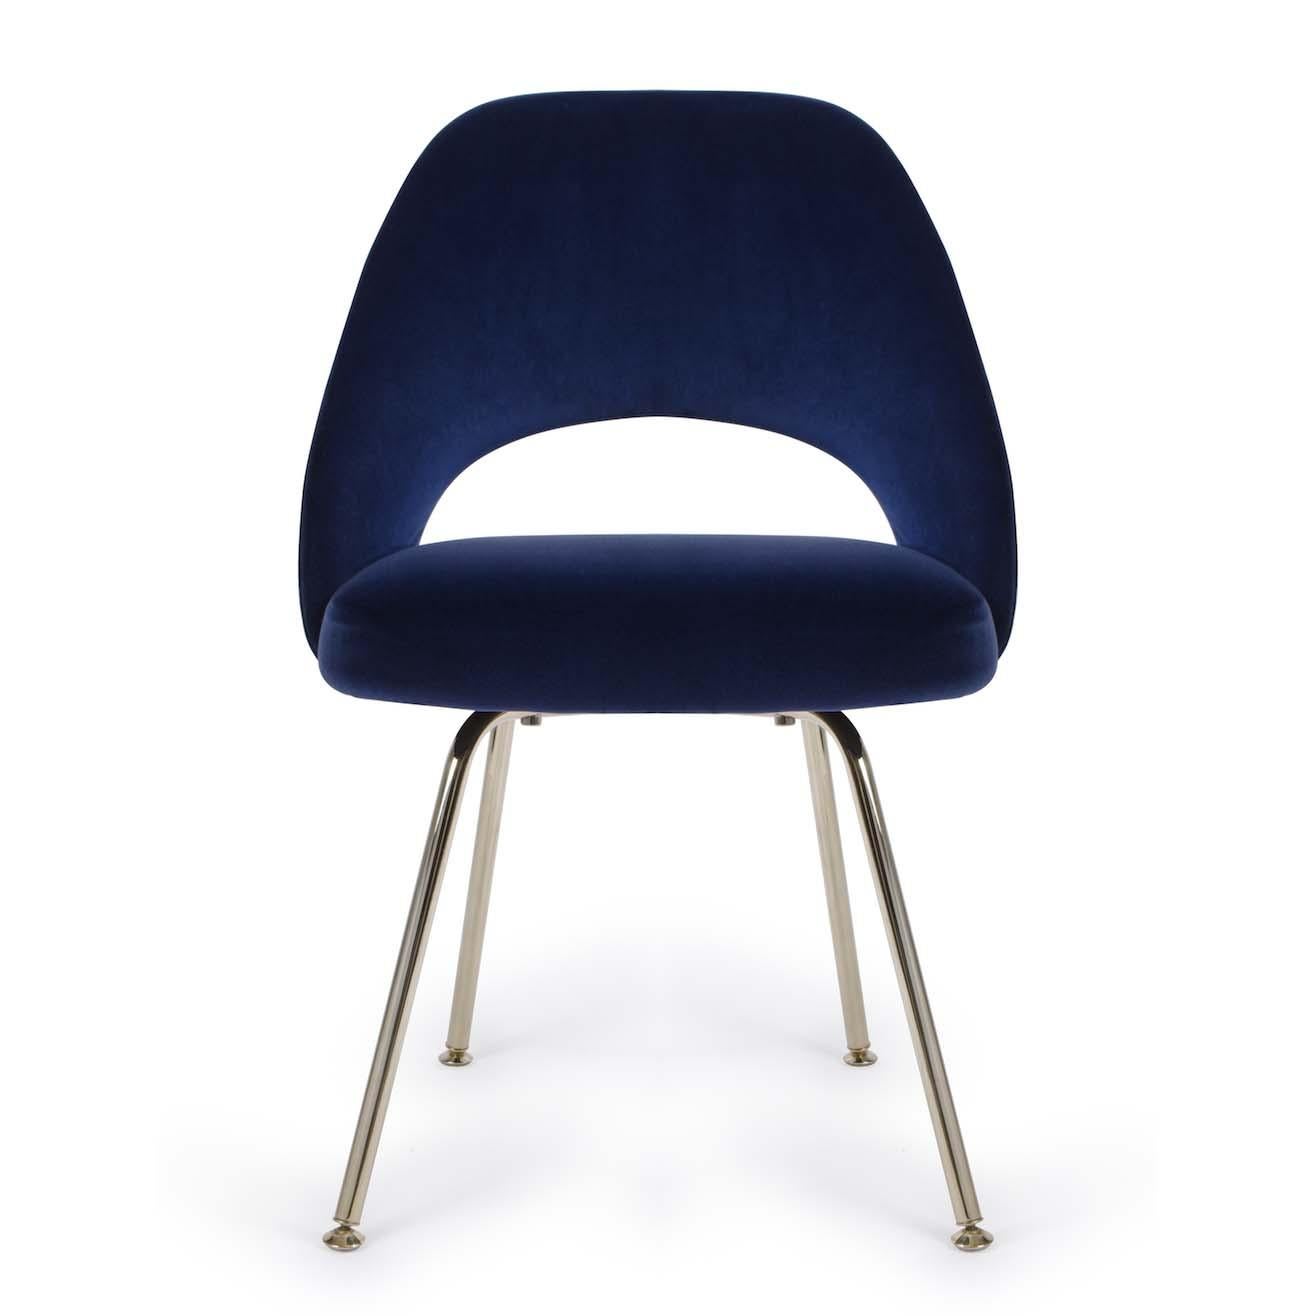 Depuis des années, nous restaurons des fauteuils de direction Saarinen dans tous les tissus possibles et imaginables. Nous avons restauré ces chaises d'appoint avec des pieds tubulaires en acier poli, en utilisant notre superbe collection de velours